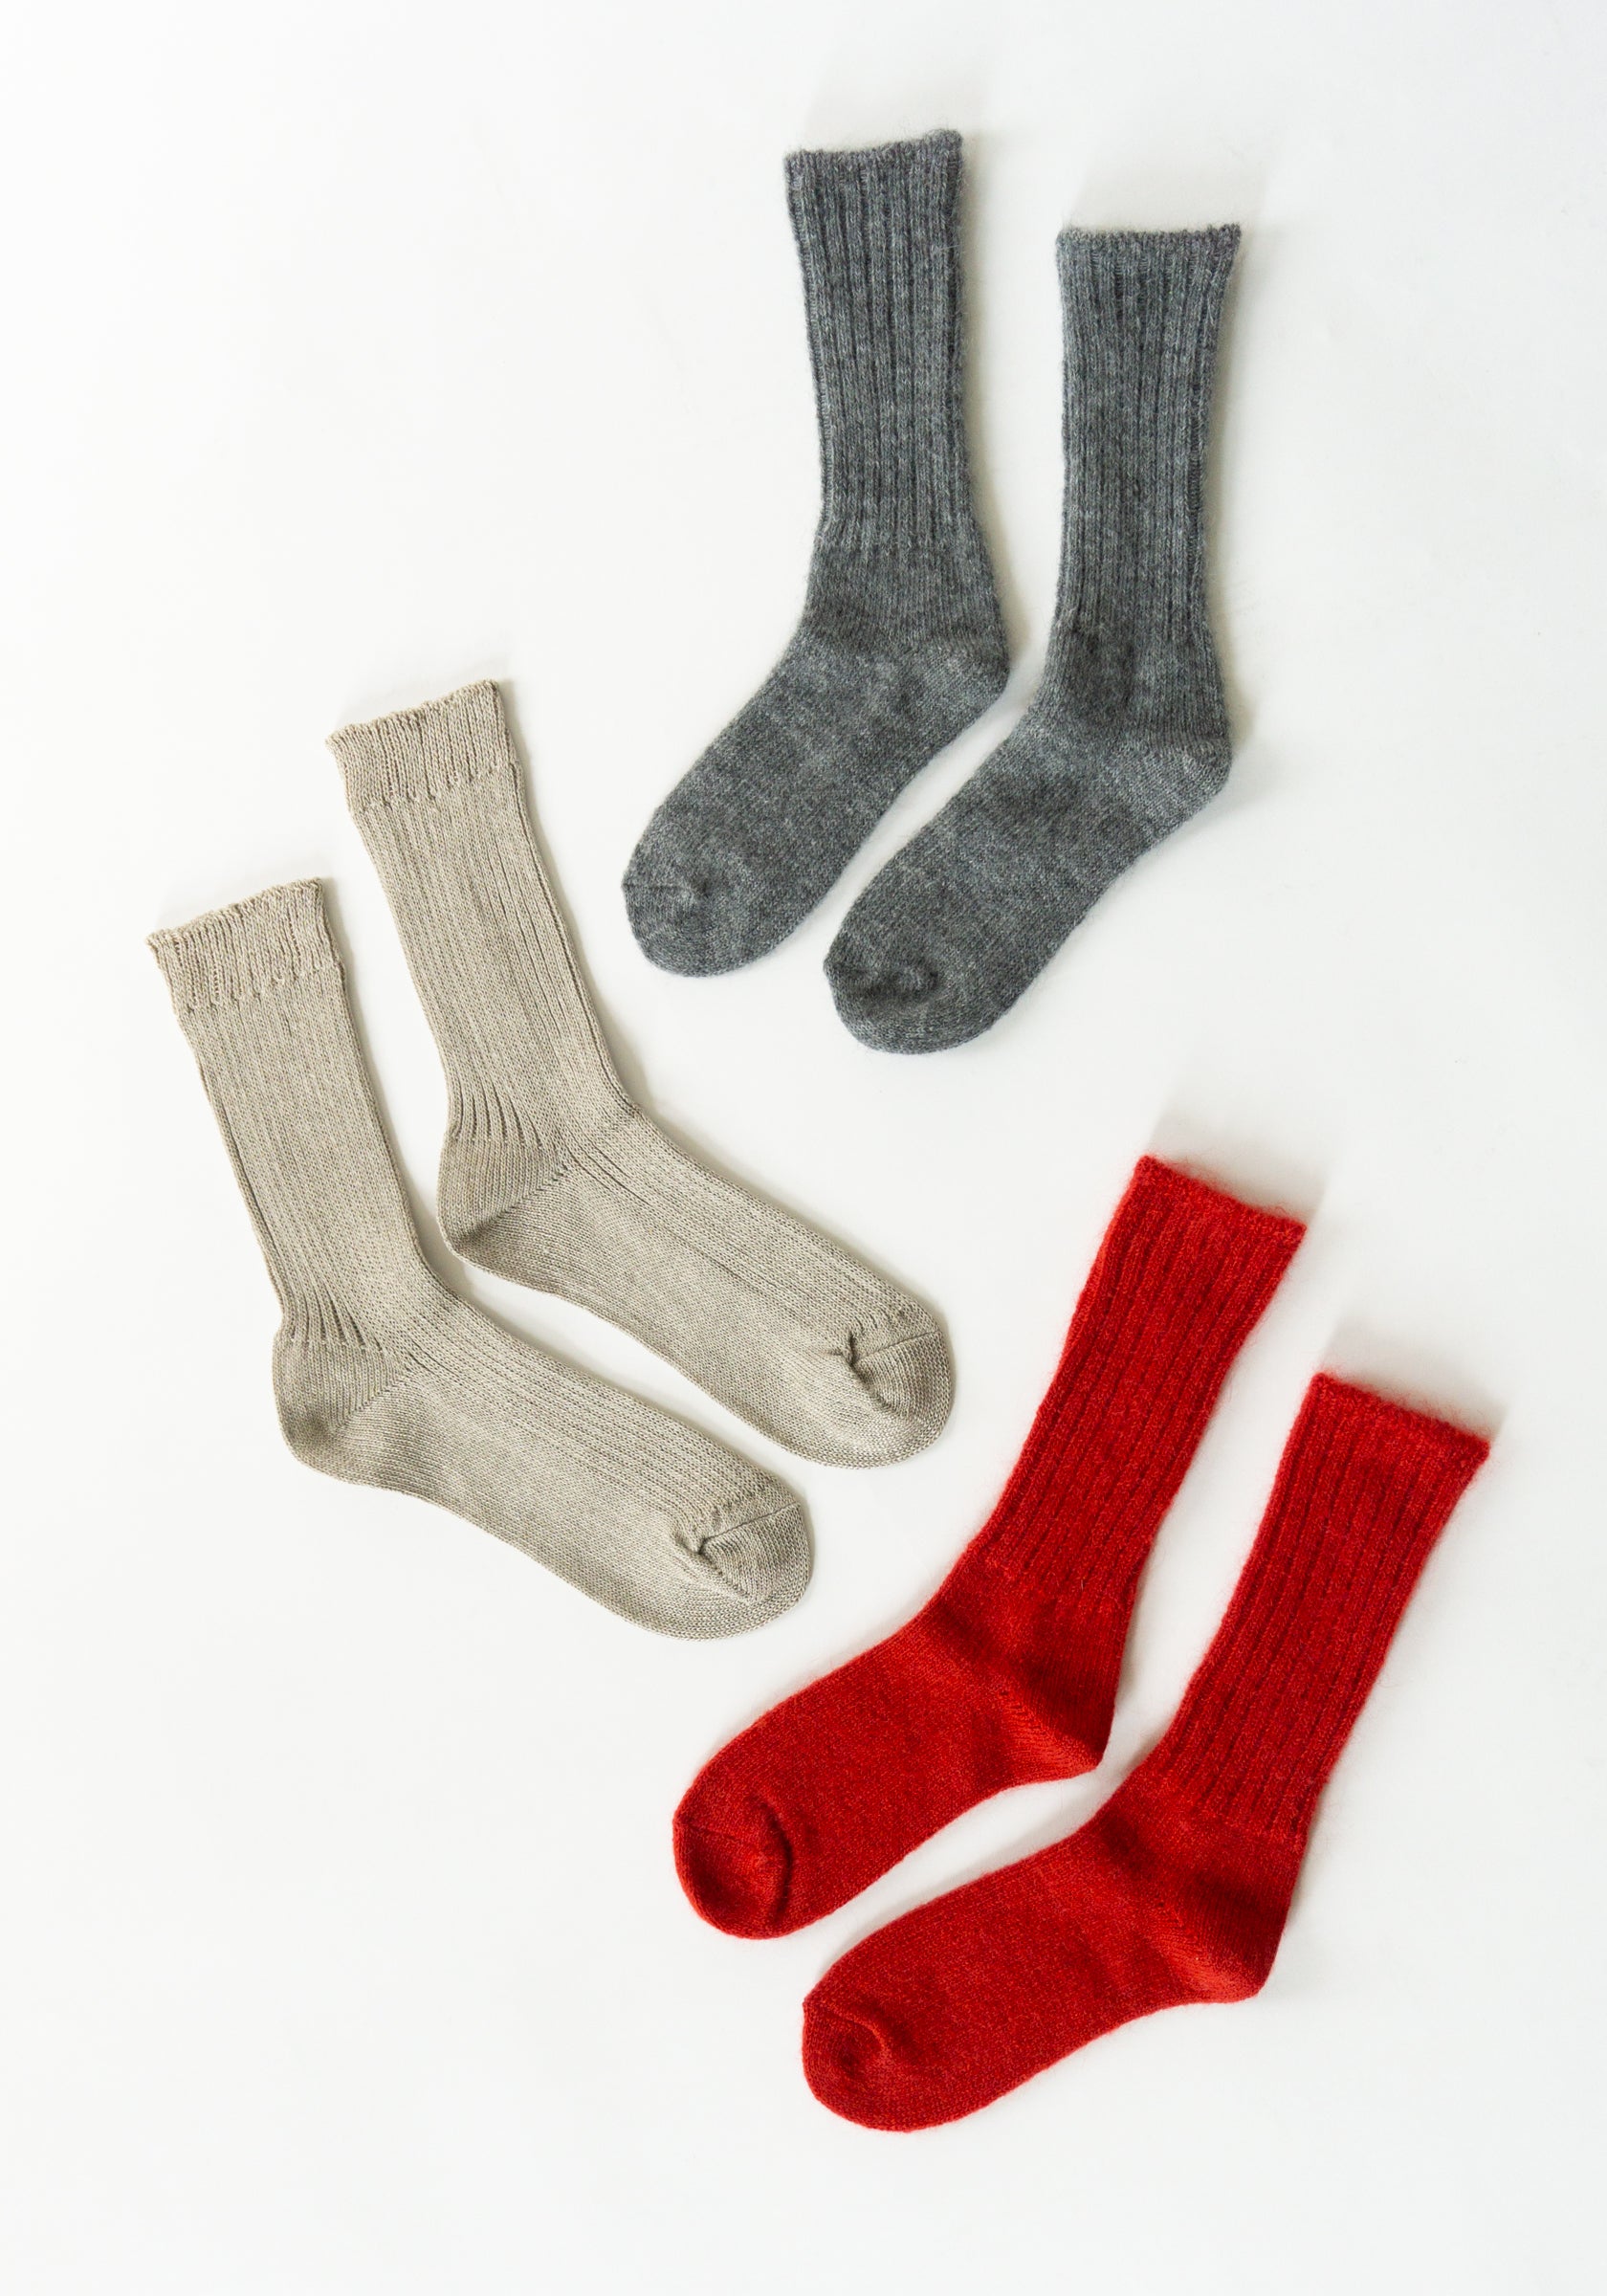 Fog Linen Mohair Socks in Grey